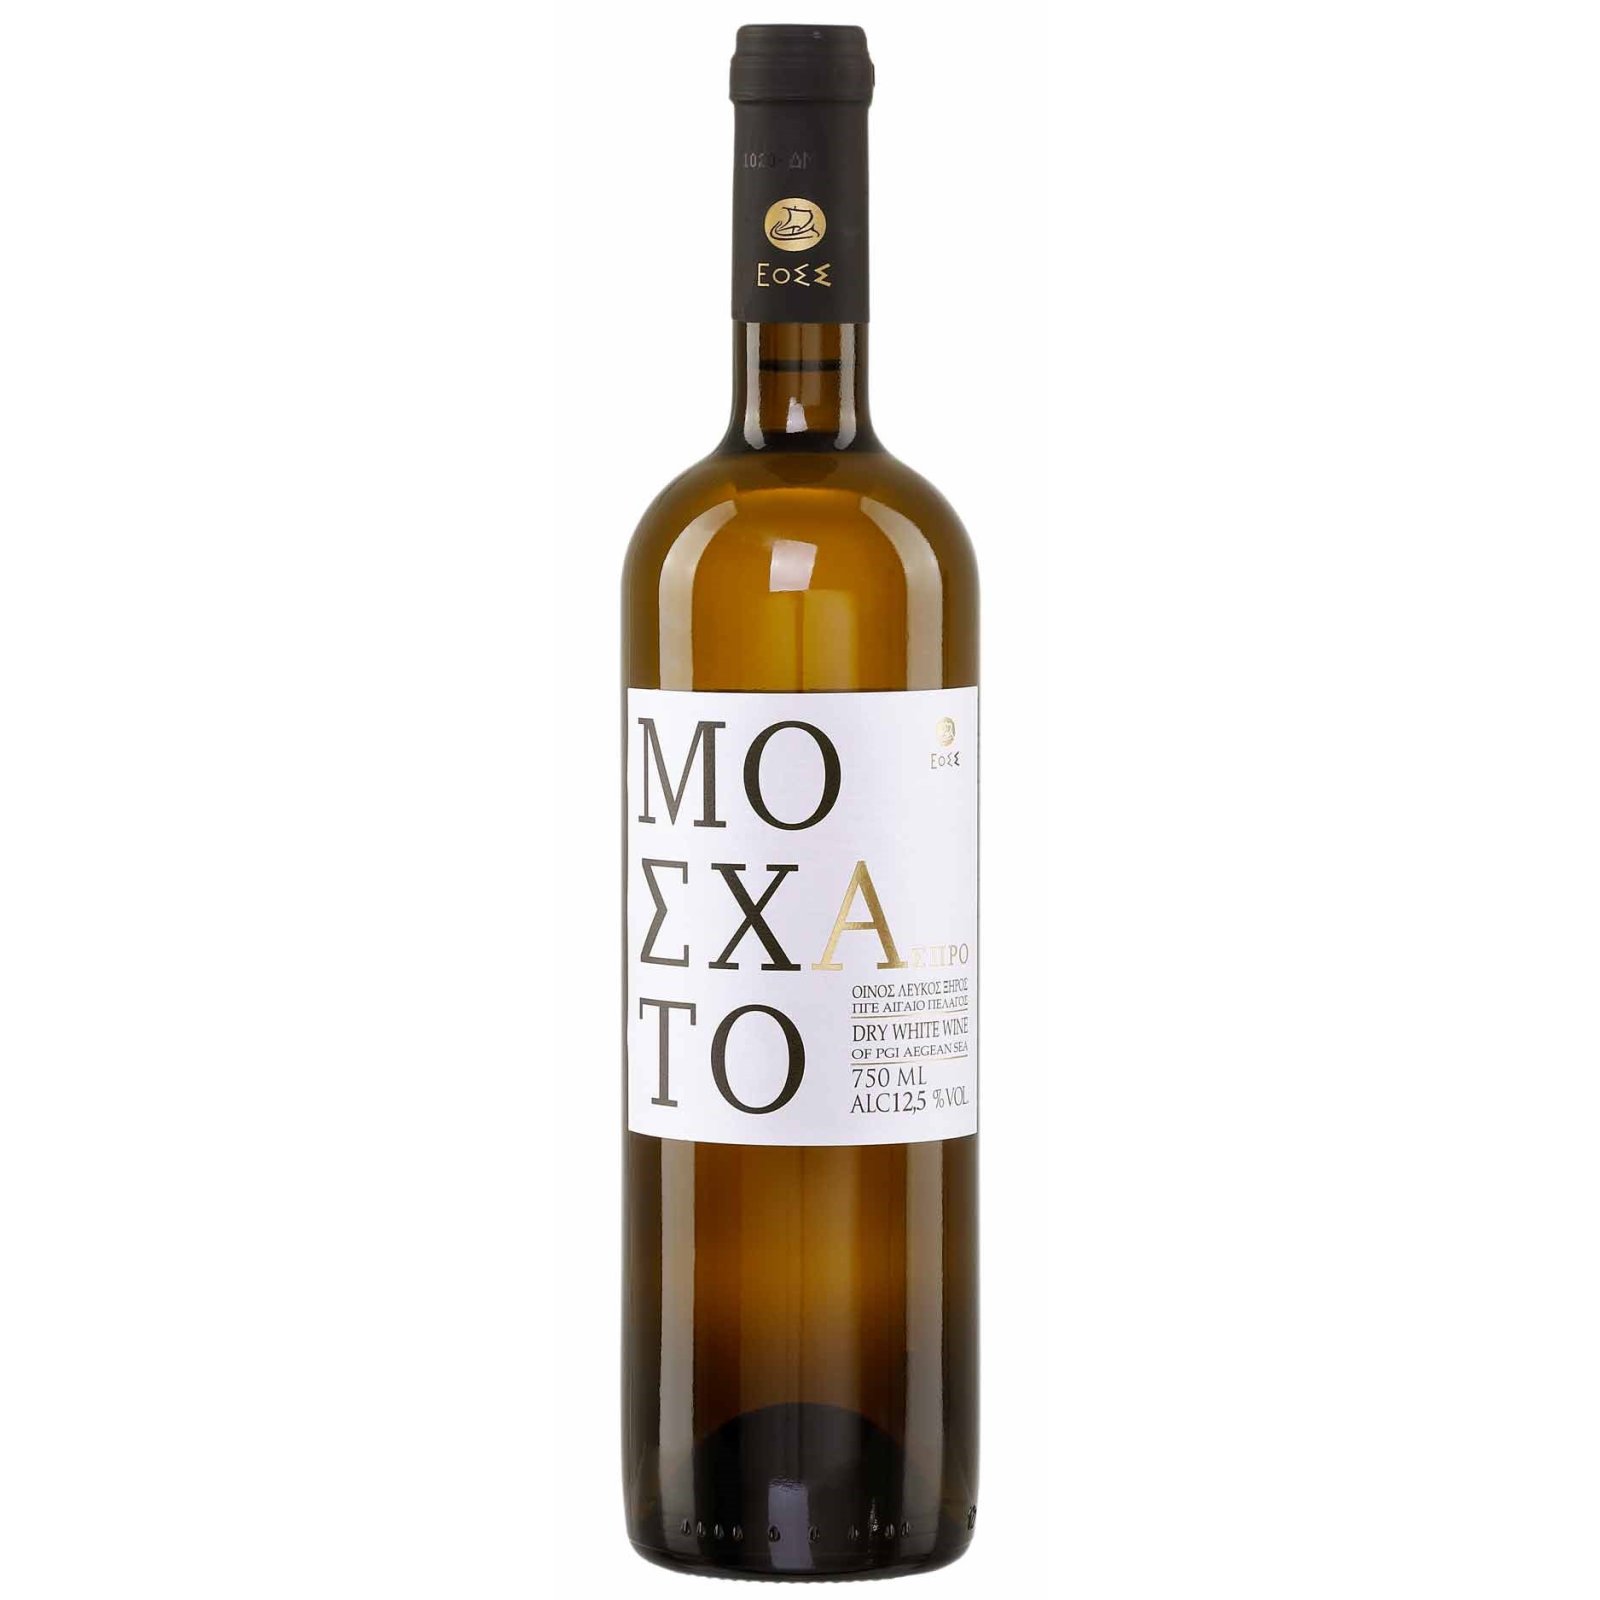 Moschato (Golden von kaufen, Jassas bei 0,75l Samena) Weißwein Samos